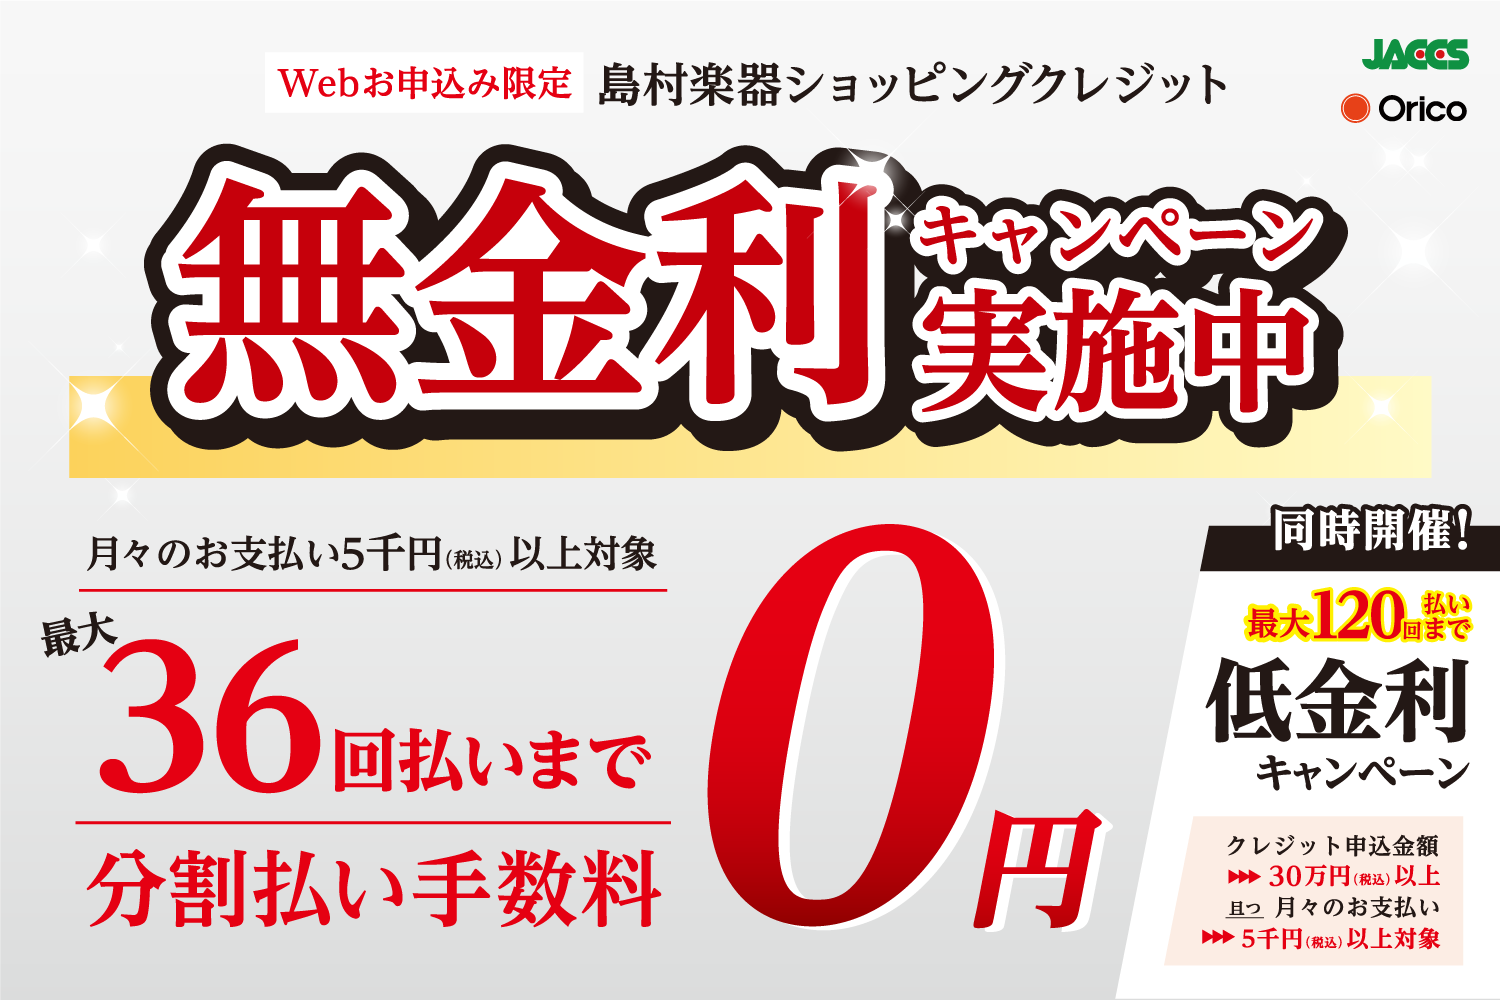 【お得情報】ジャックス・セディナ・オリコのWEB限定クレジット無金利キャンペーン！